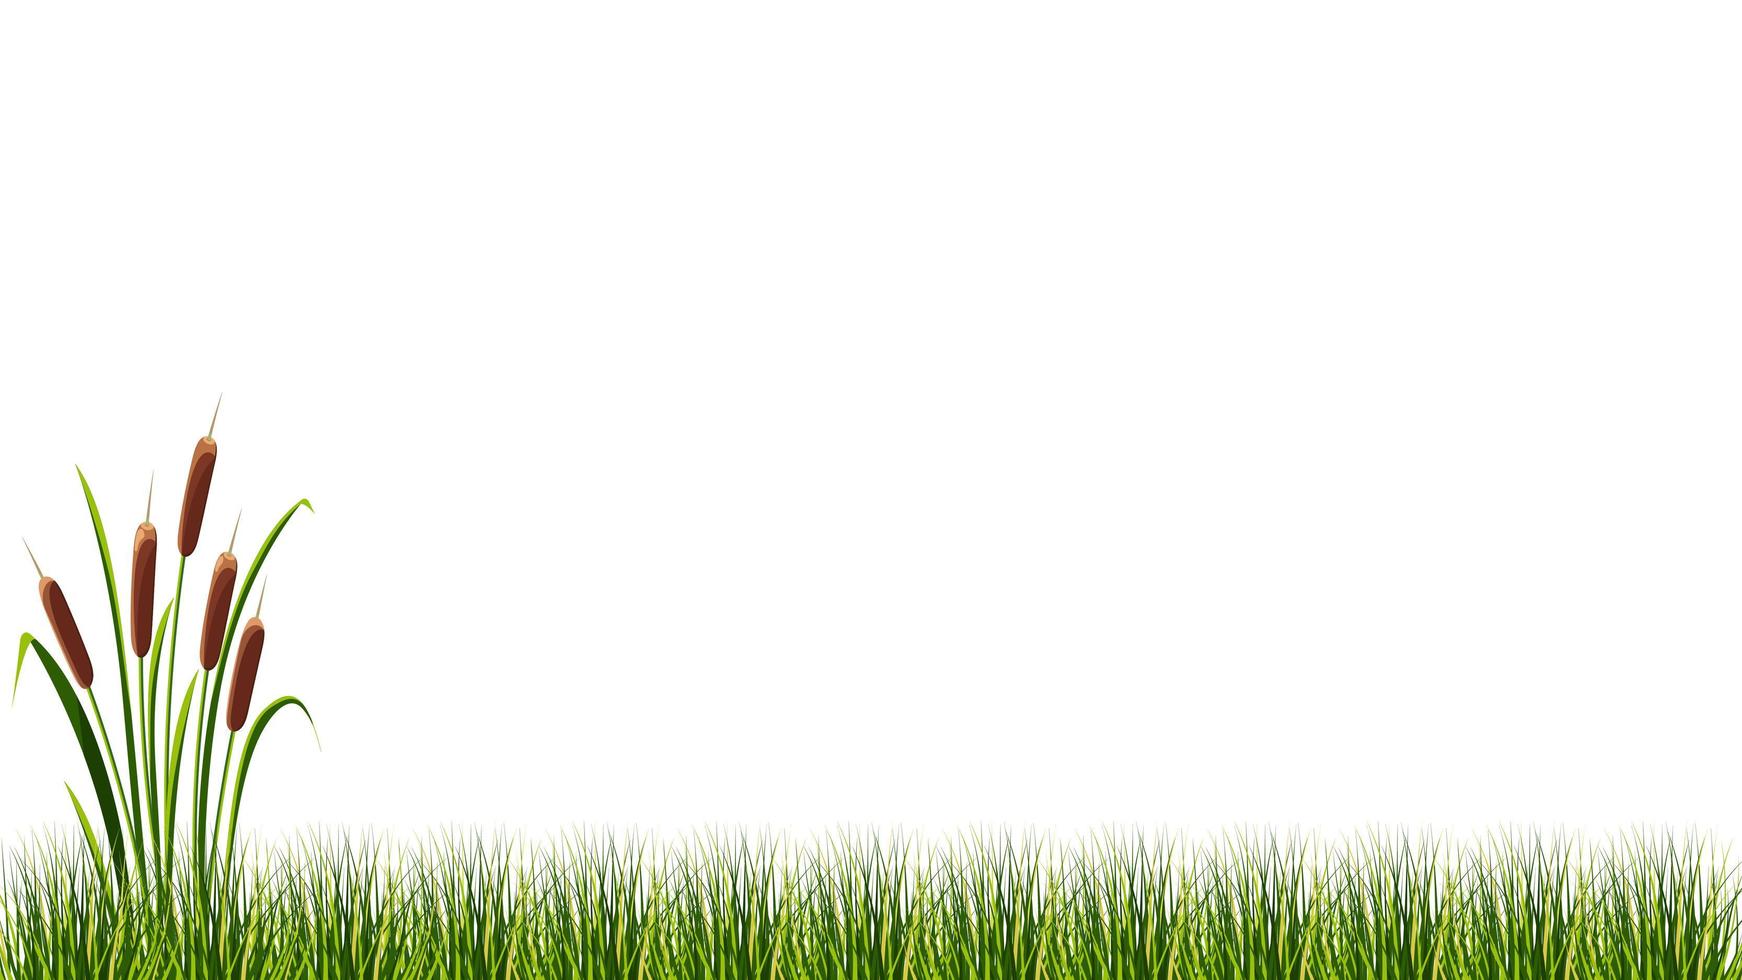 Lake cane in marsh grass on white background. Vector illustration.